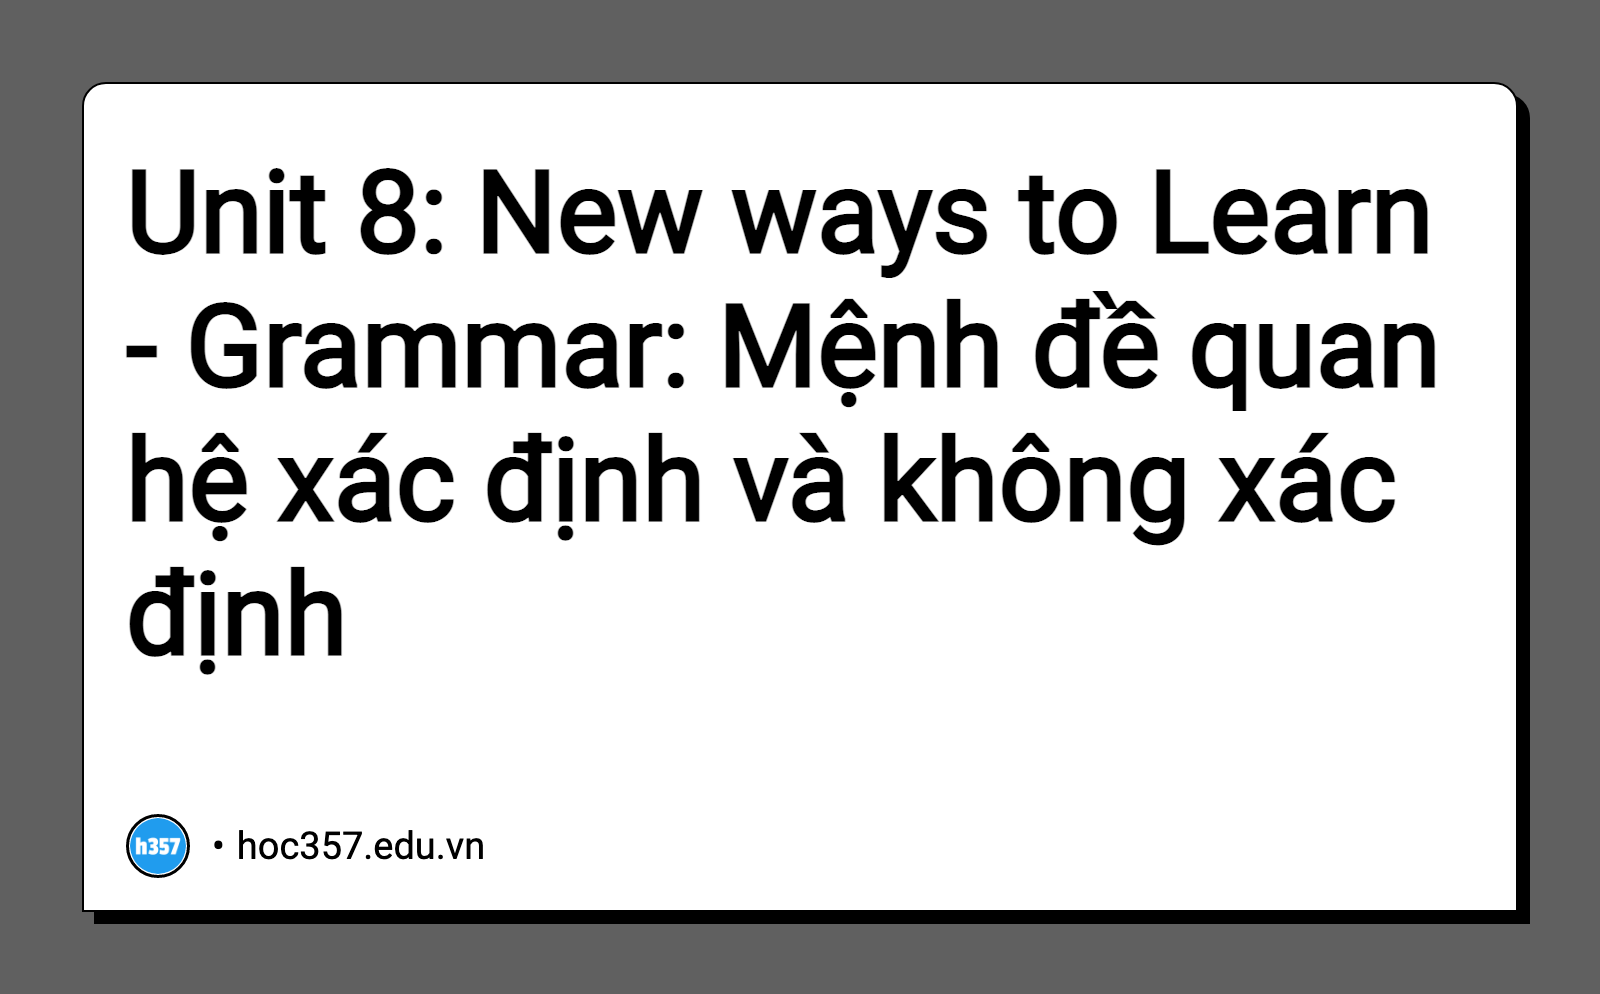 Hình minh họa Unit 8: New ways to Learn - Grammar: Mệnh đề quan hệ xác định và không xác định